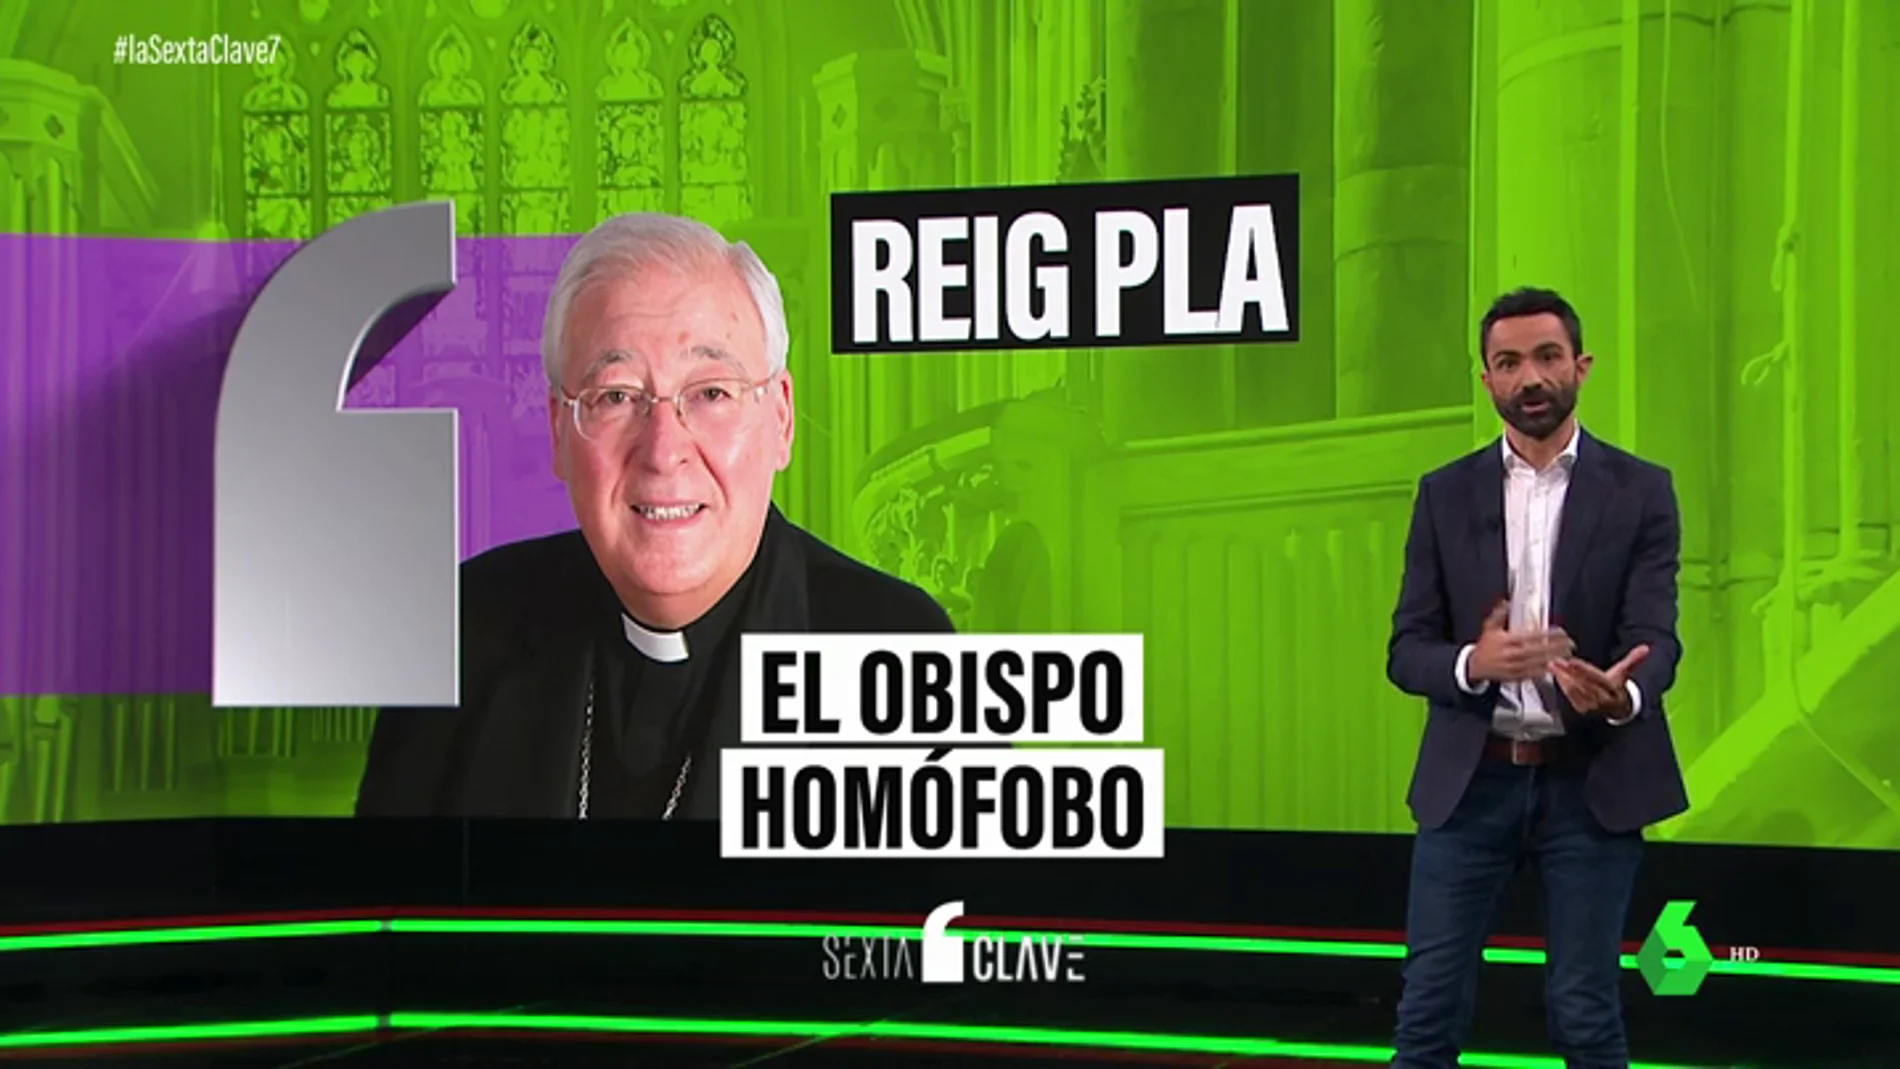 De considerar el aborto un "holocausto silencioso" a llamar "bozales" a los preservativos: las polémicas del obispo de Alcalá